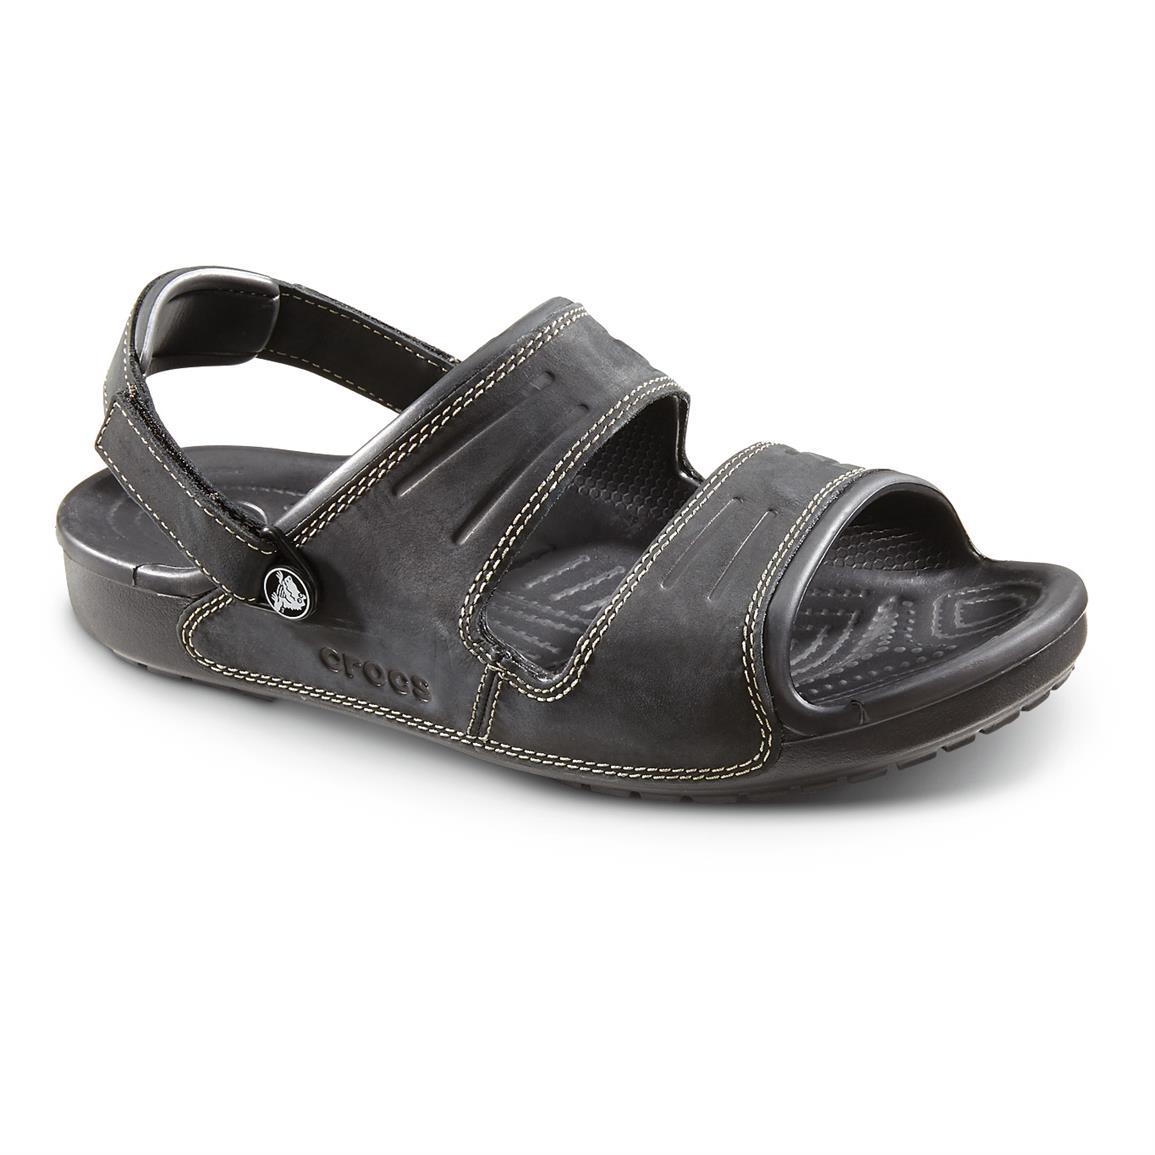 crocs strap sandals